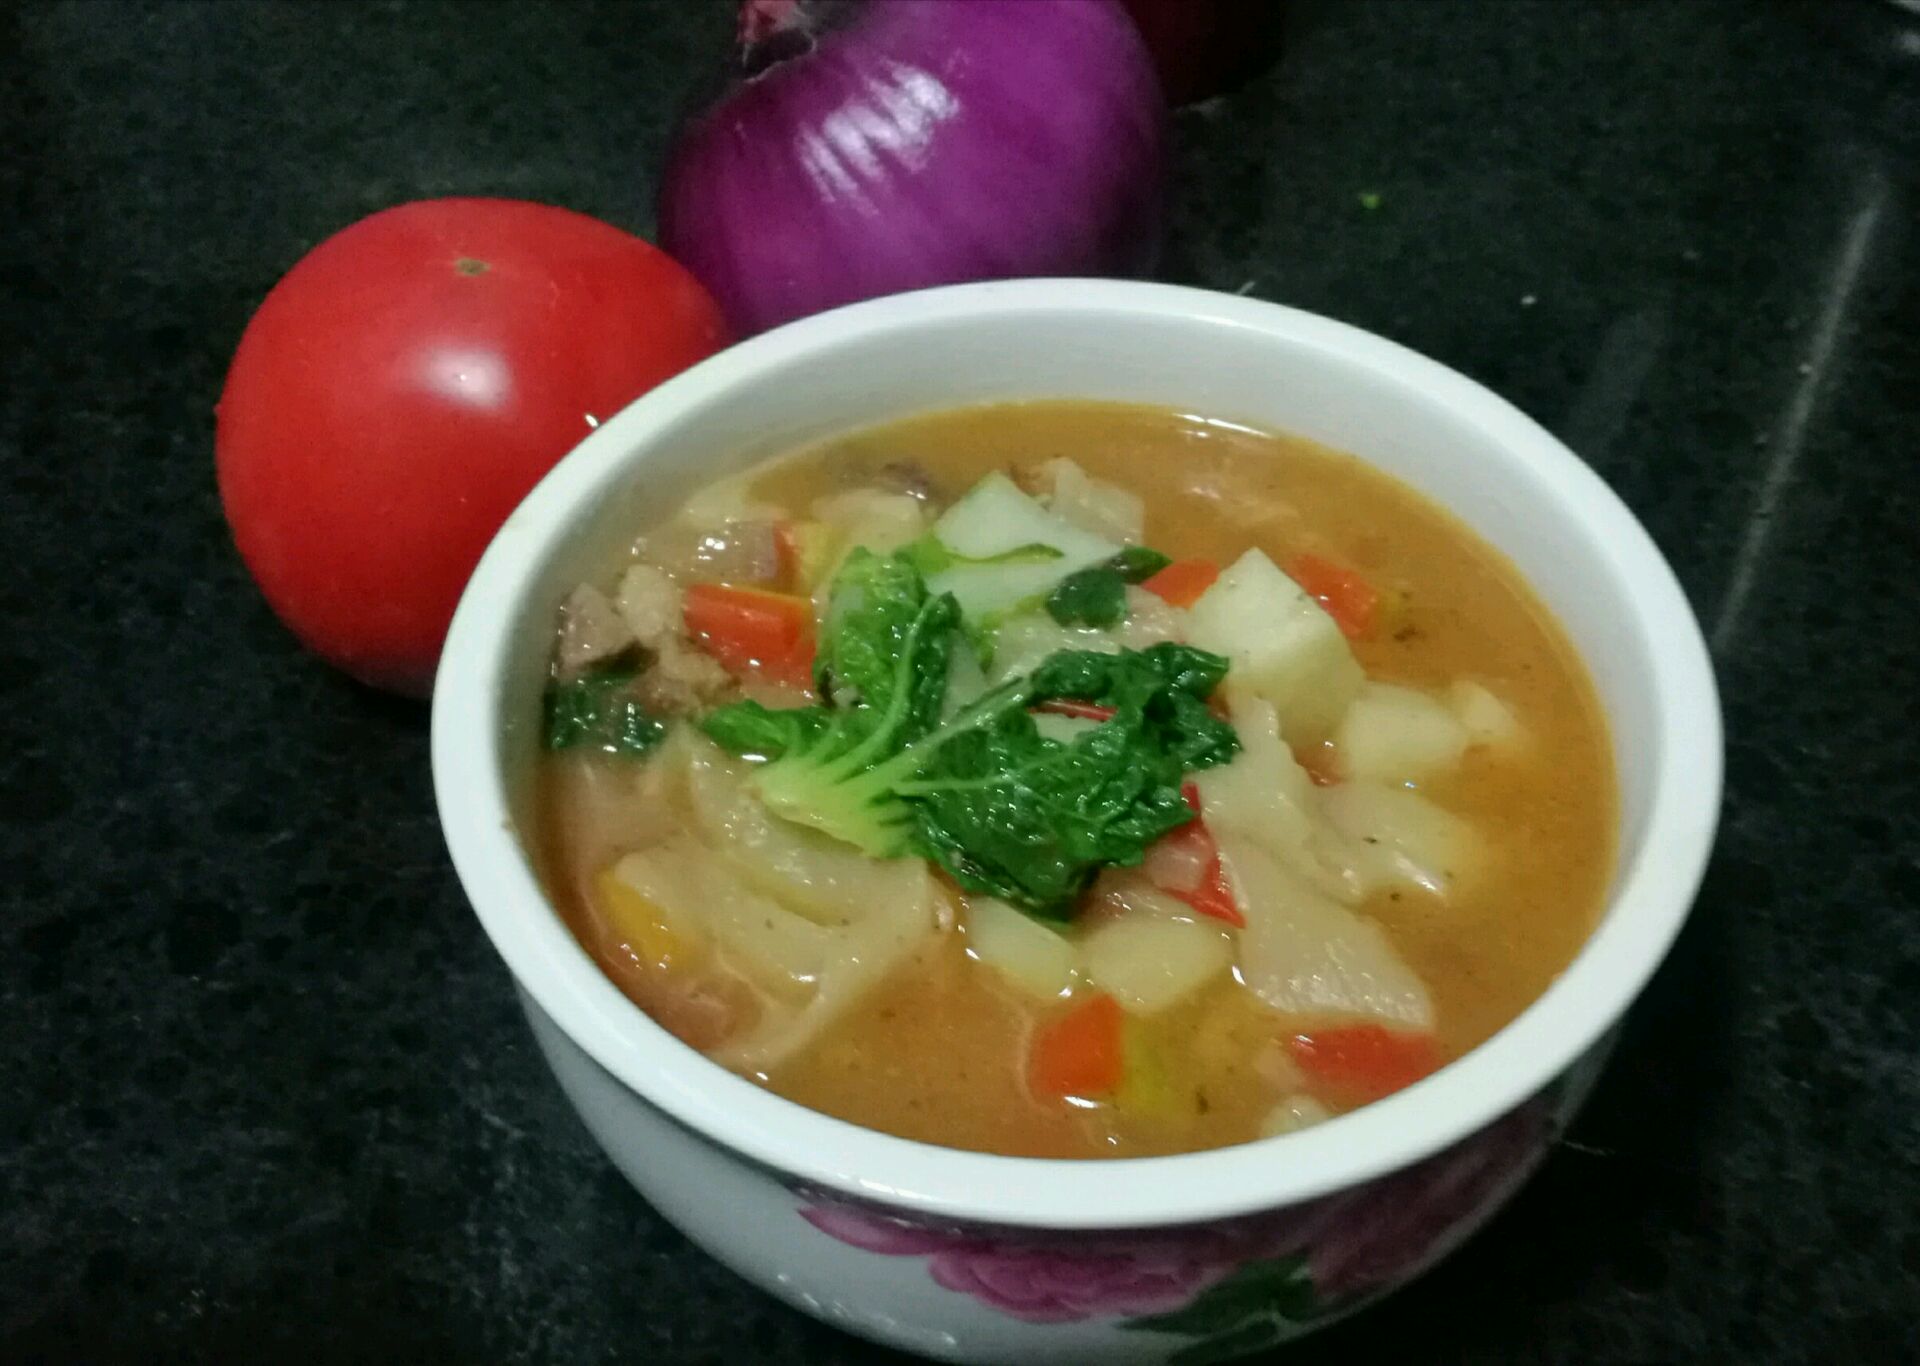 西红柿蔬菜丸子汤怎么做_西红柿蔬菜丸子汤的做法_梨子730_豆果美食